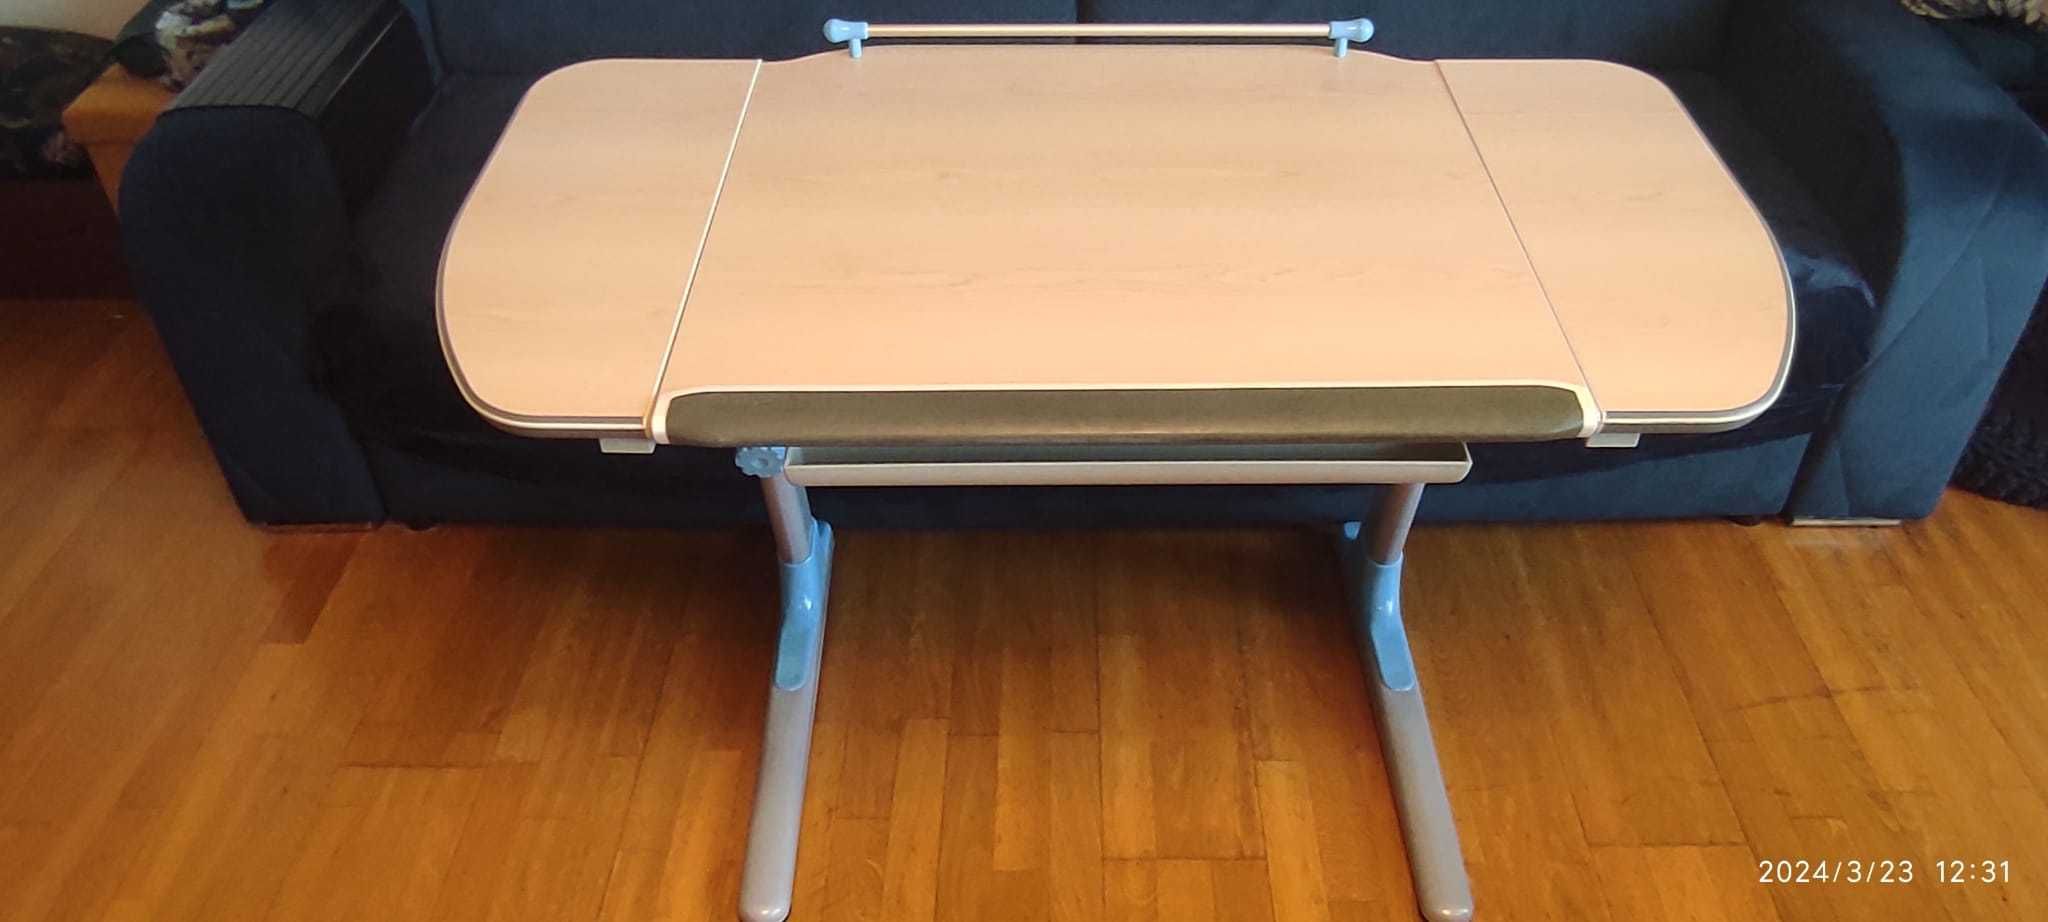 Mayer biurko dla dziecka ergonomiczne rosnące razem z nim - regulowane